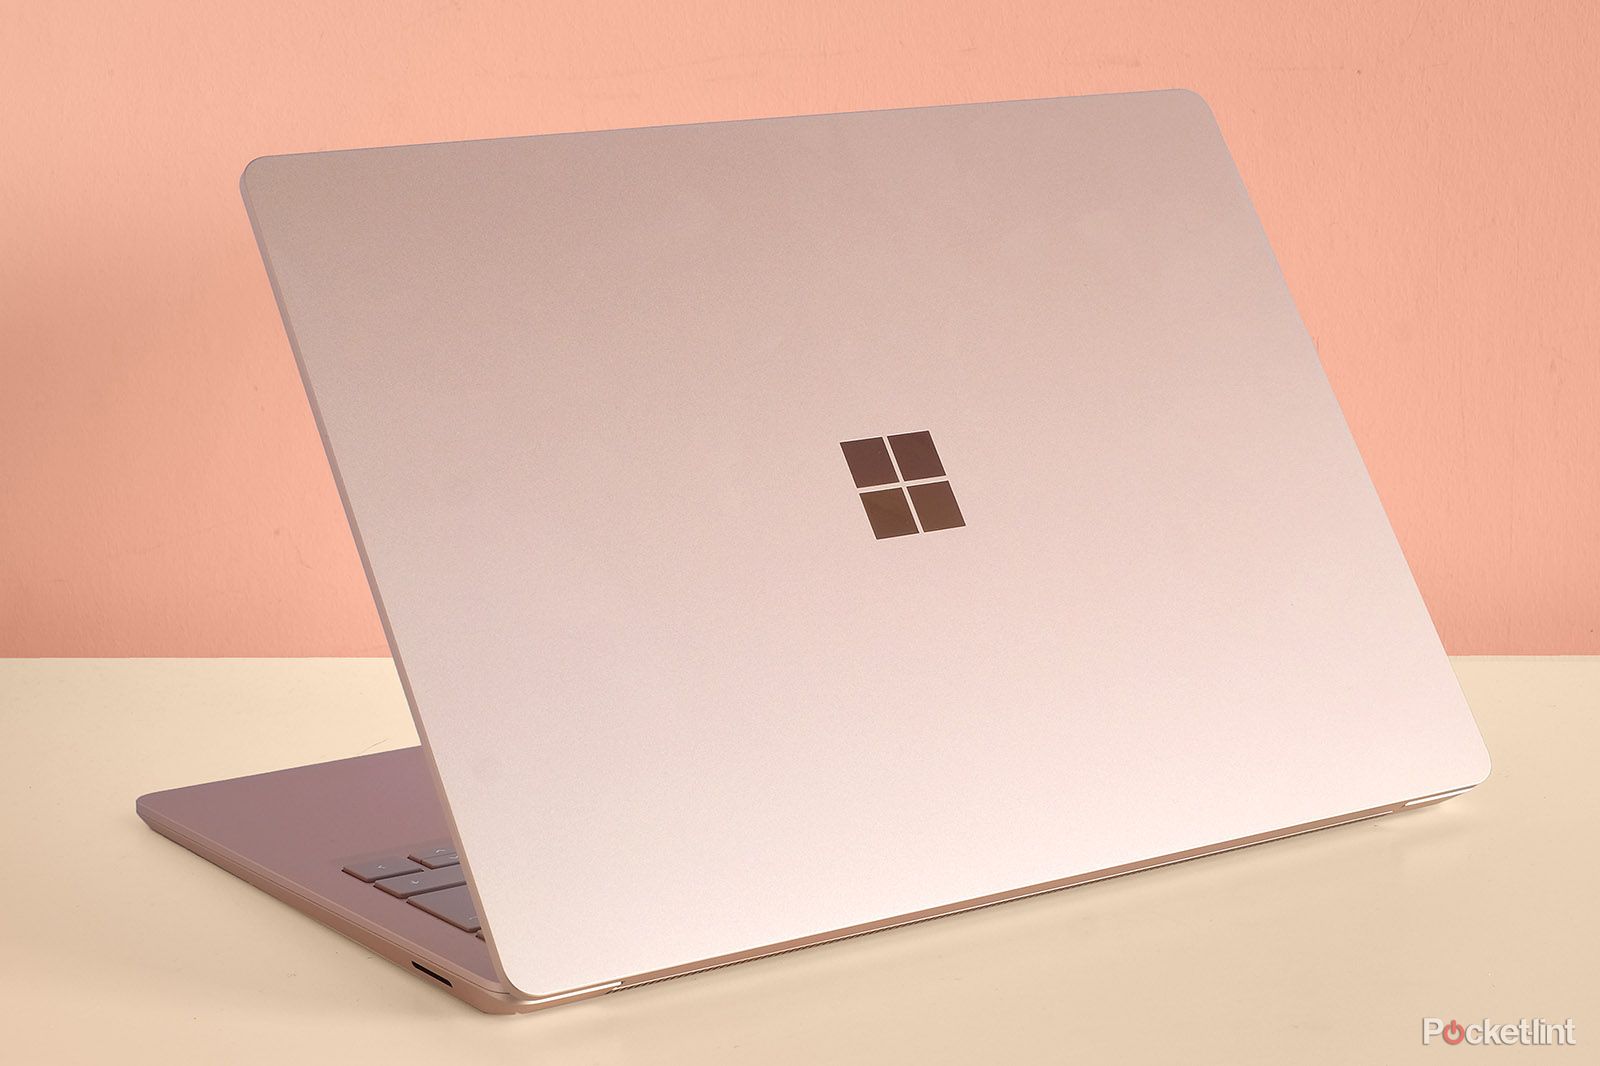 Microsoft Surface Laptop - Prime Day Laptop Deals